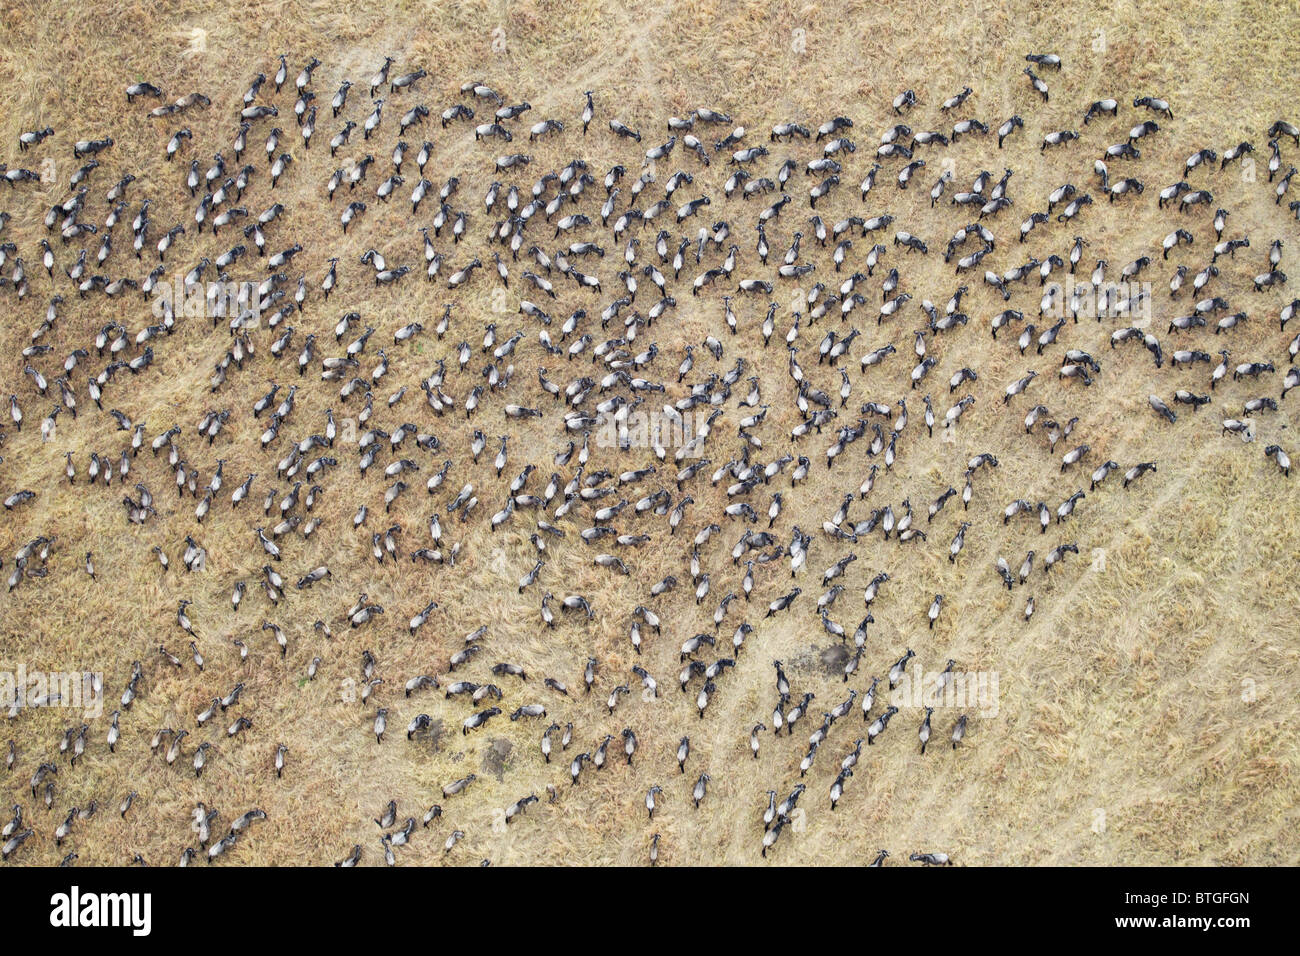 Vista aerea del GNU migrazione. Fino a 1,5 milioni di gnu si muovono attraverso il Mara/Serengeti ogni anno. Kenya Foto Stock